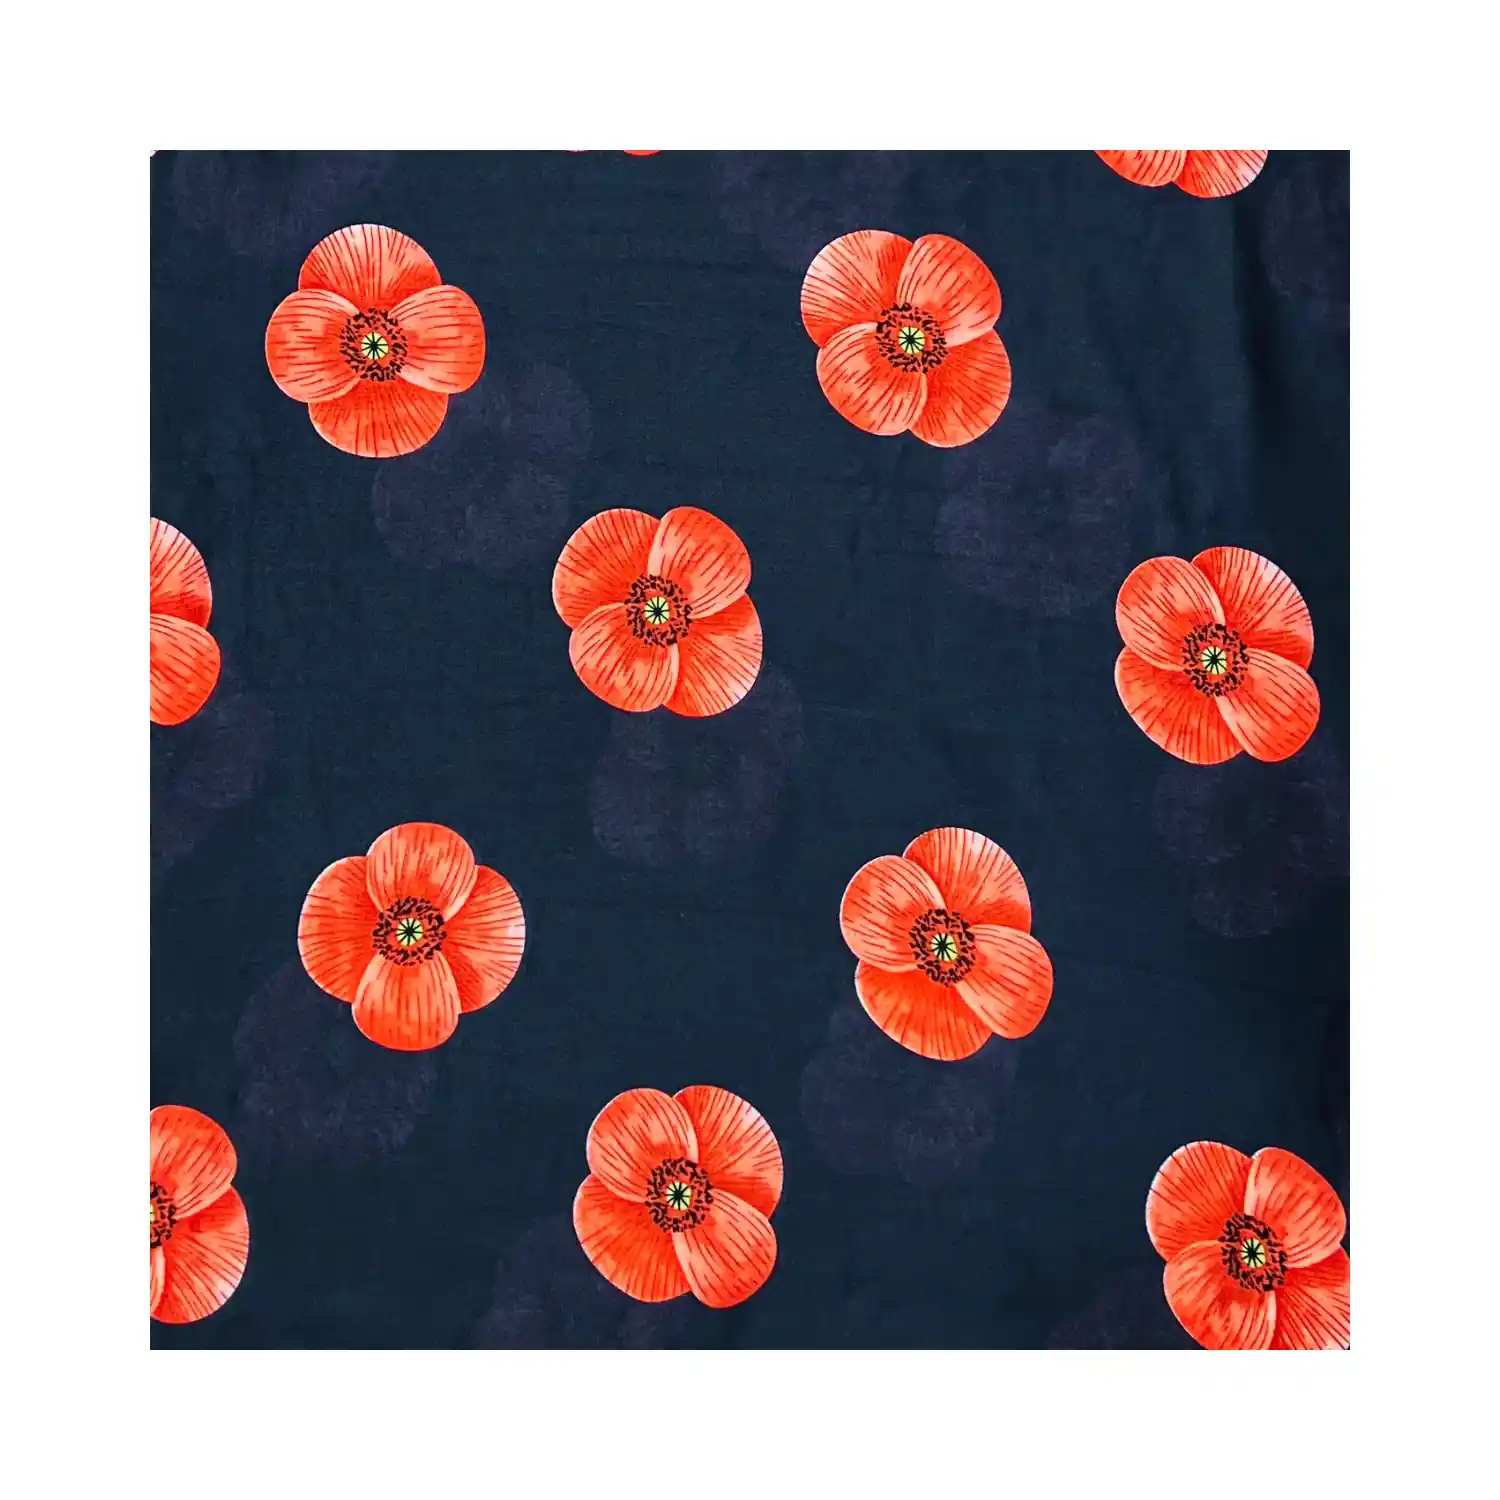 Mørkeblåt tørklæde med store røde blomster